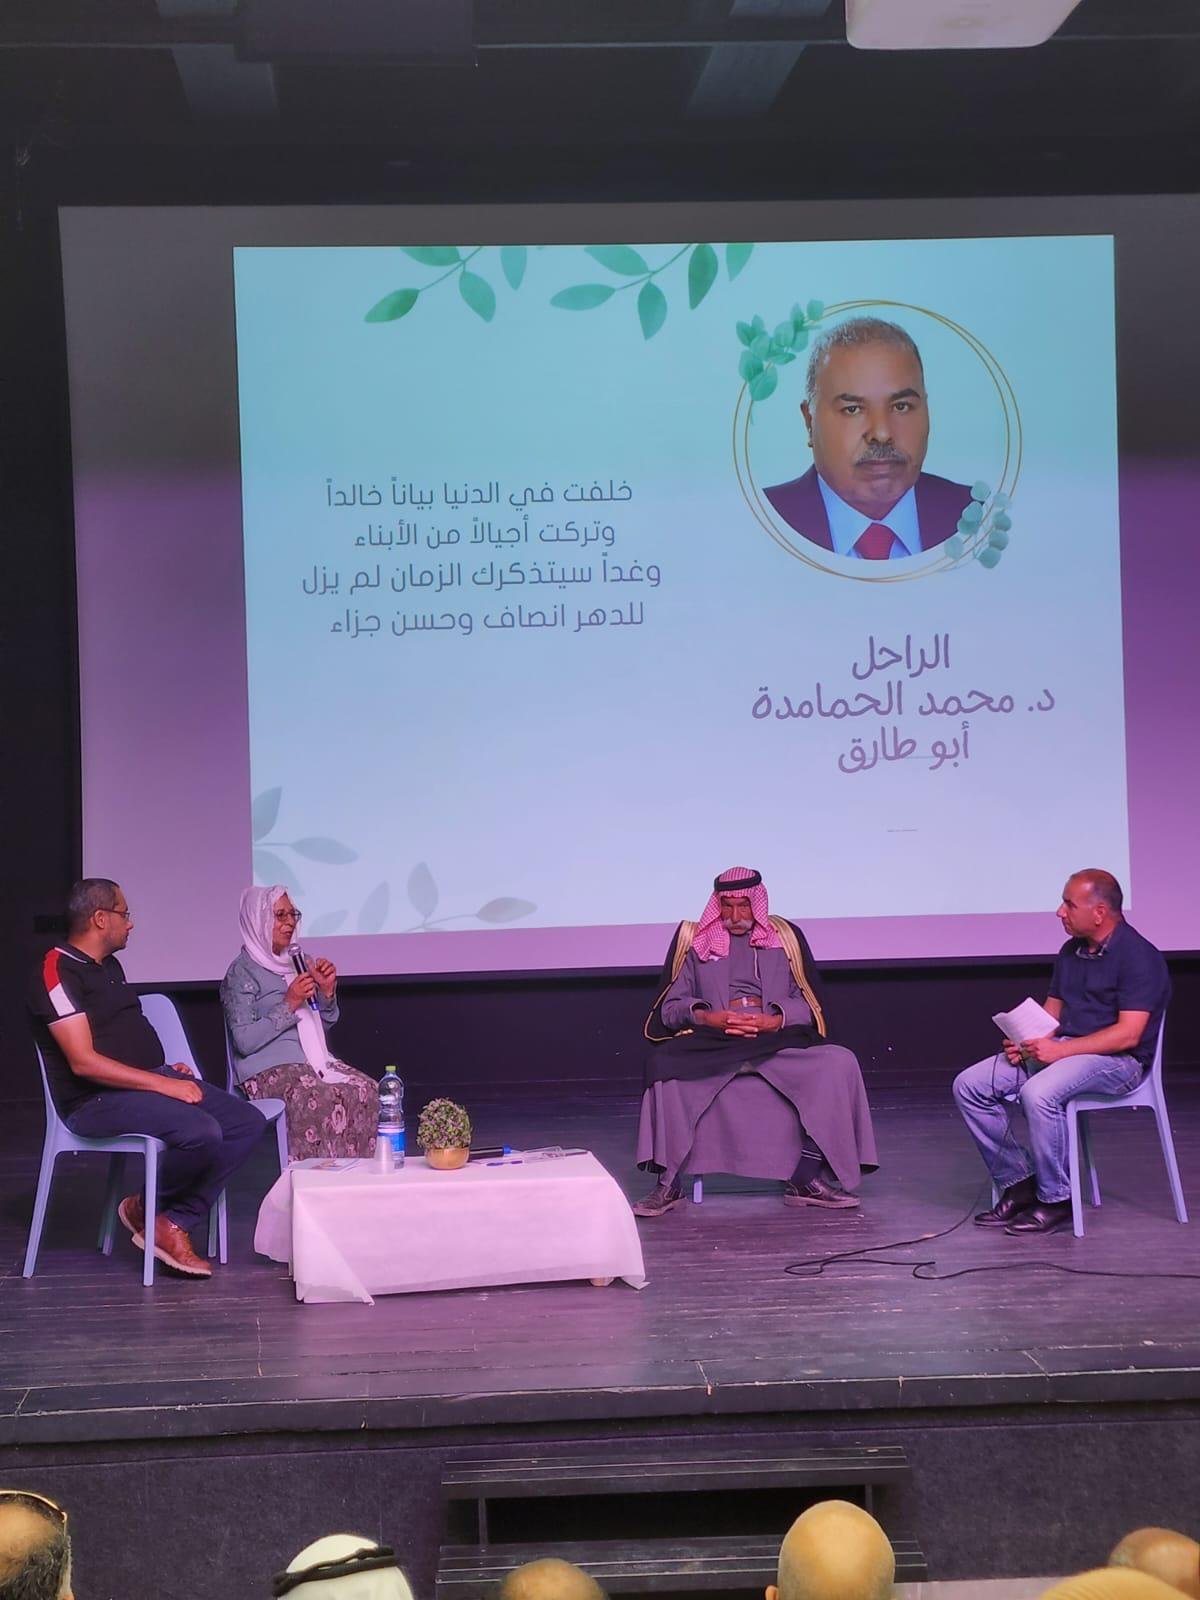 حفل تكريم لمسيرة الراحل الكبير الدكتور محمد الحمامدة في الجماهيري شقيب السلام-1